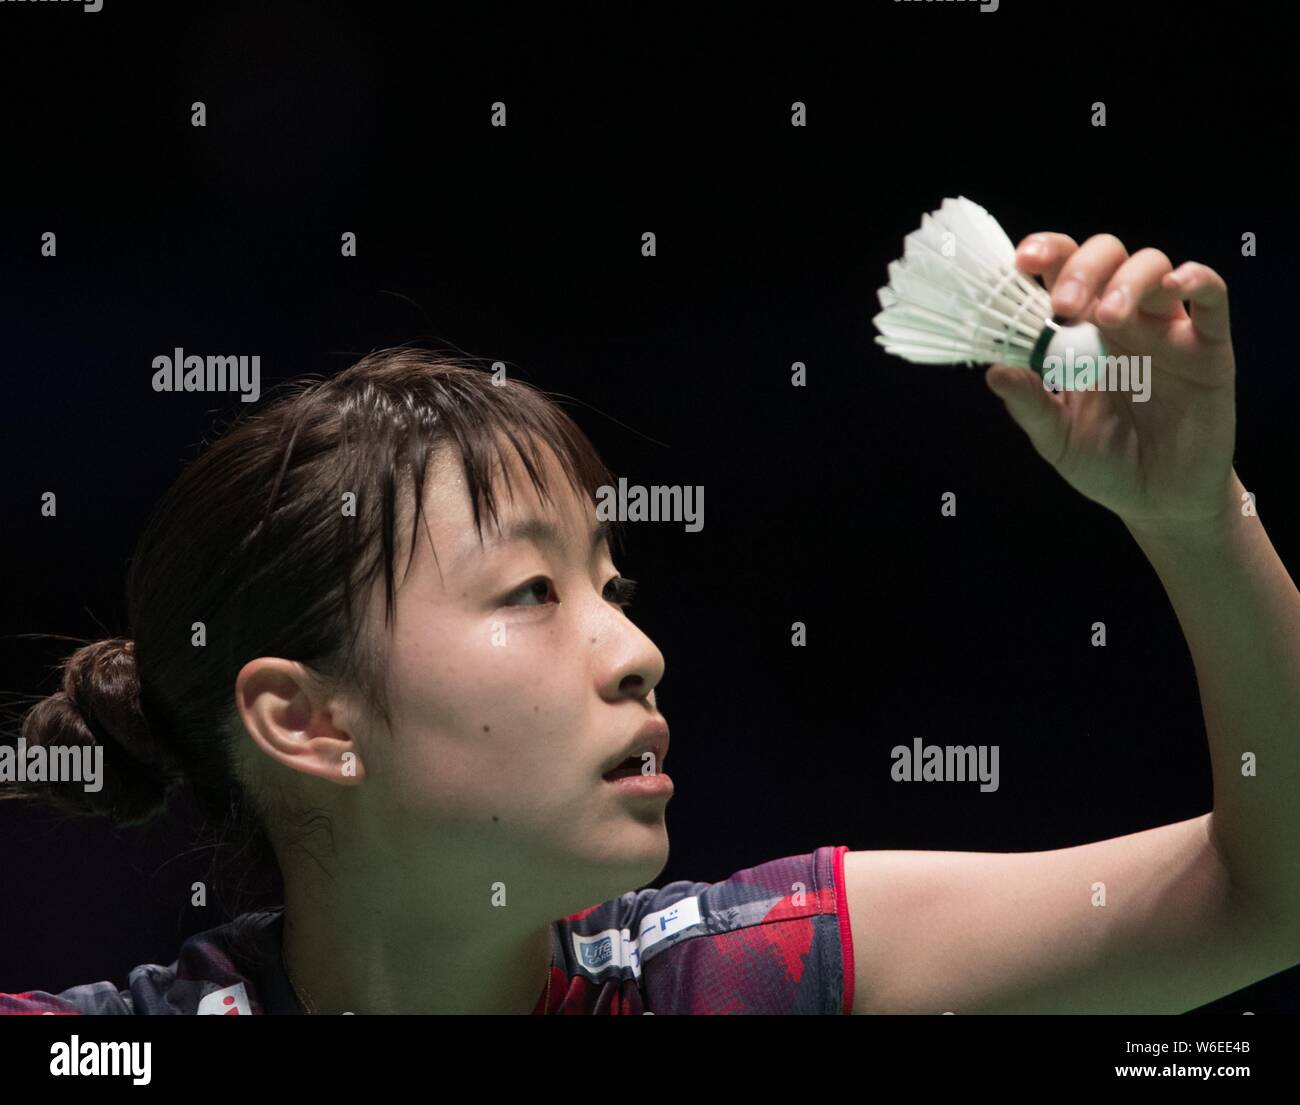 Nozomi Okuhara Japans serviert gegen S. V. Sindhu von Indien im Viertelfinale der Damen während der YONEX All England Open Badmi Stockfoto